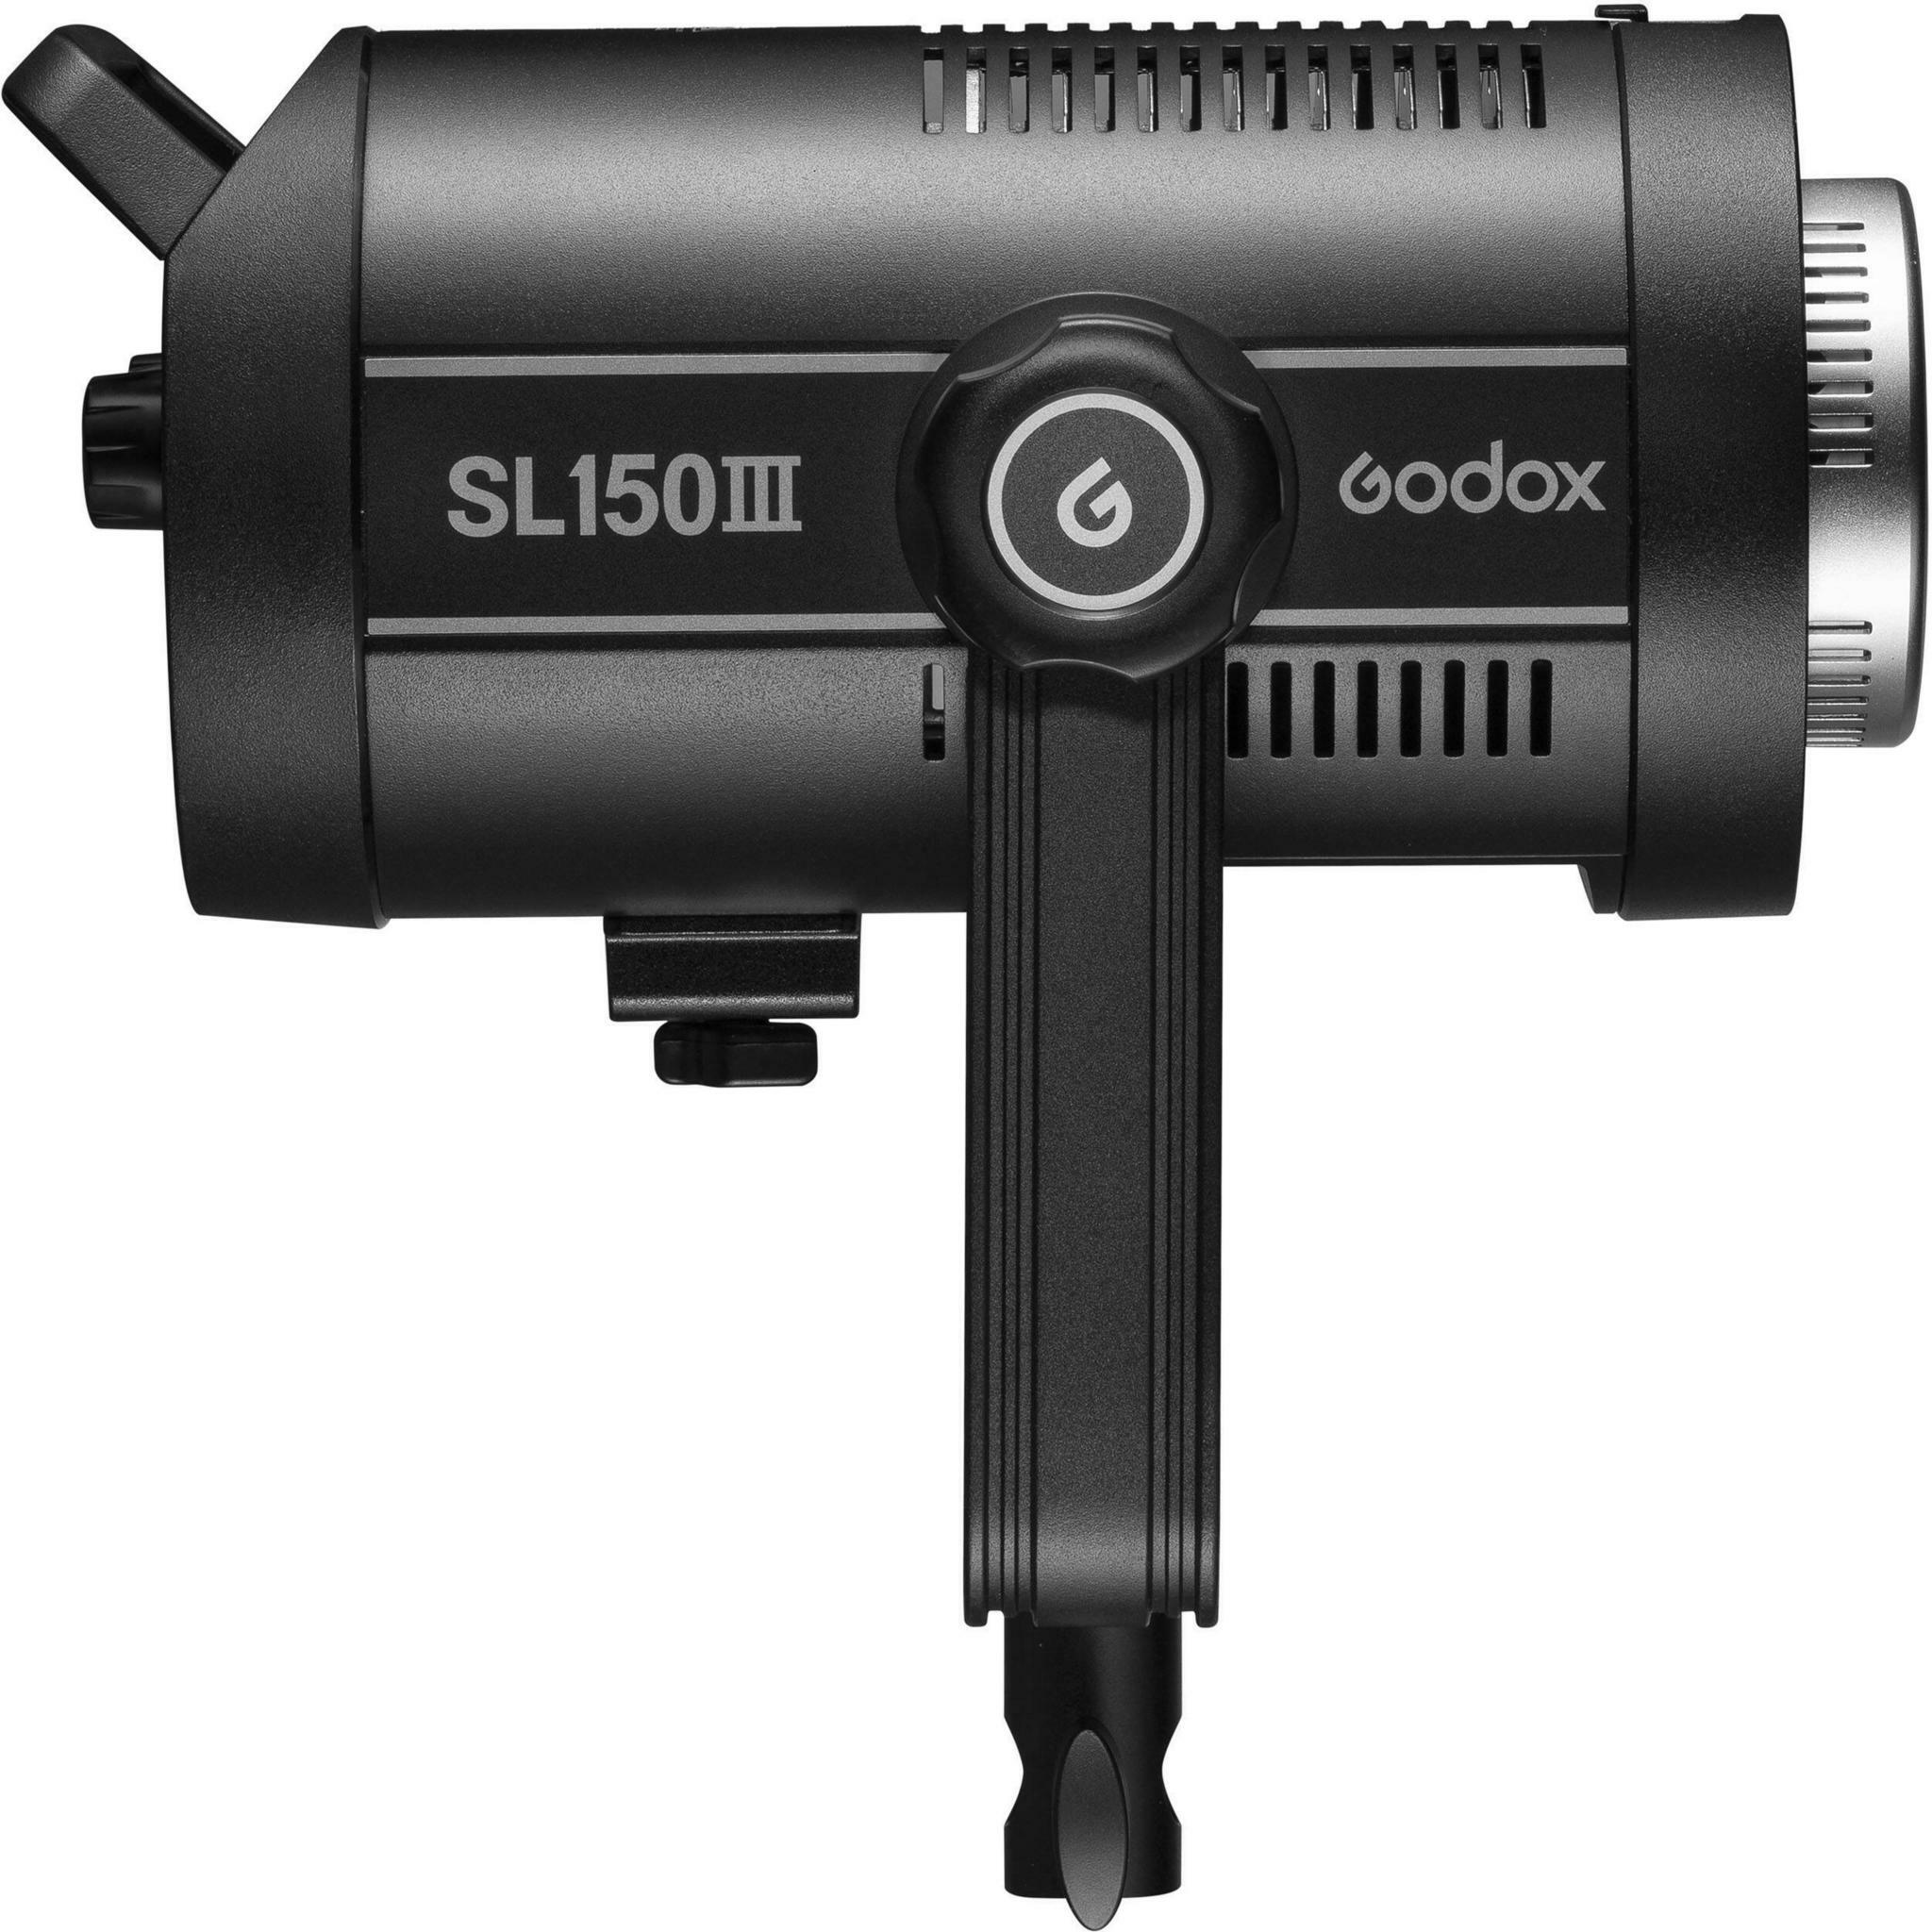    Godox SL150III    Ultra-mart